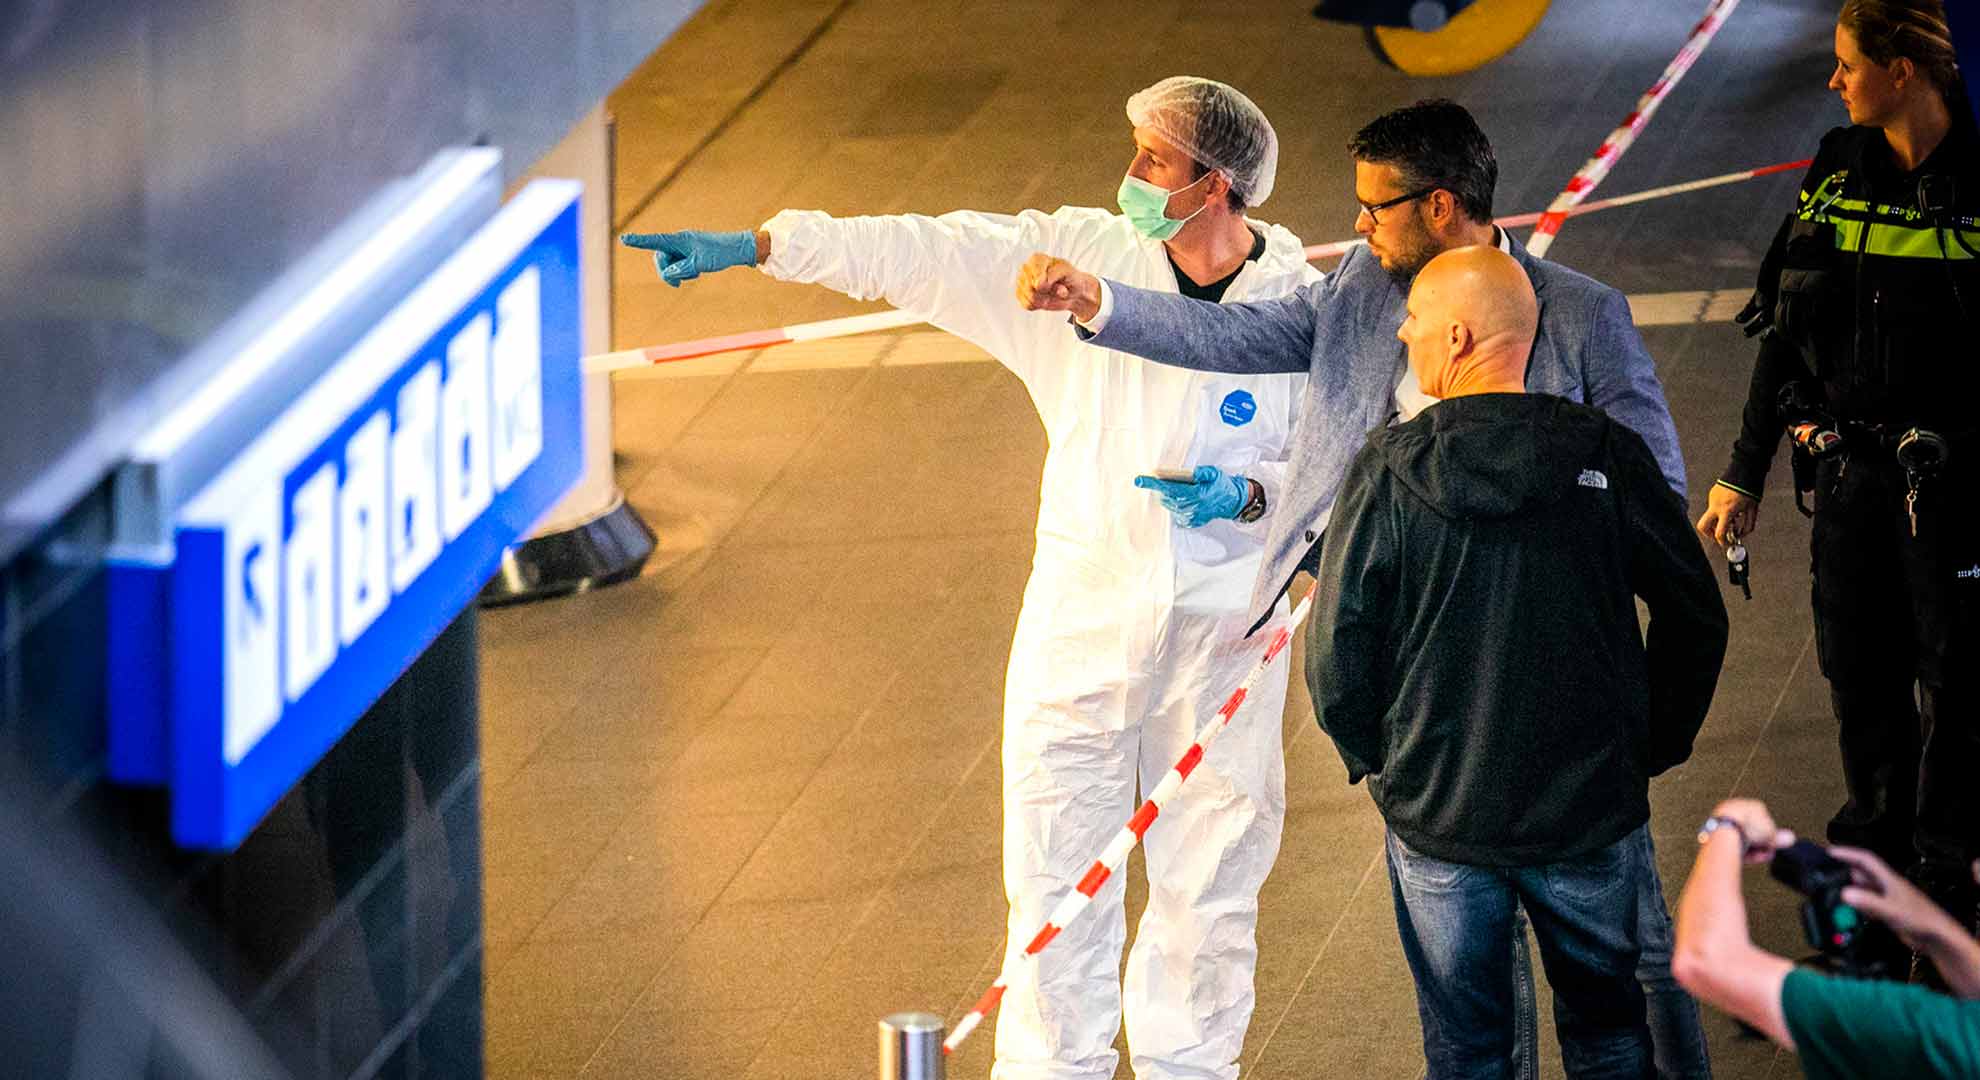 El atacante de Ámsterdam tenía una ”motivación terrorista"